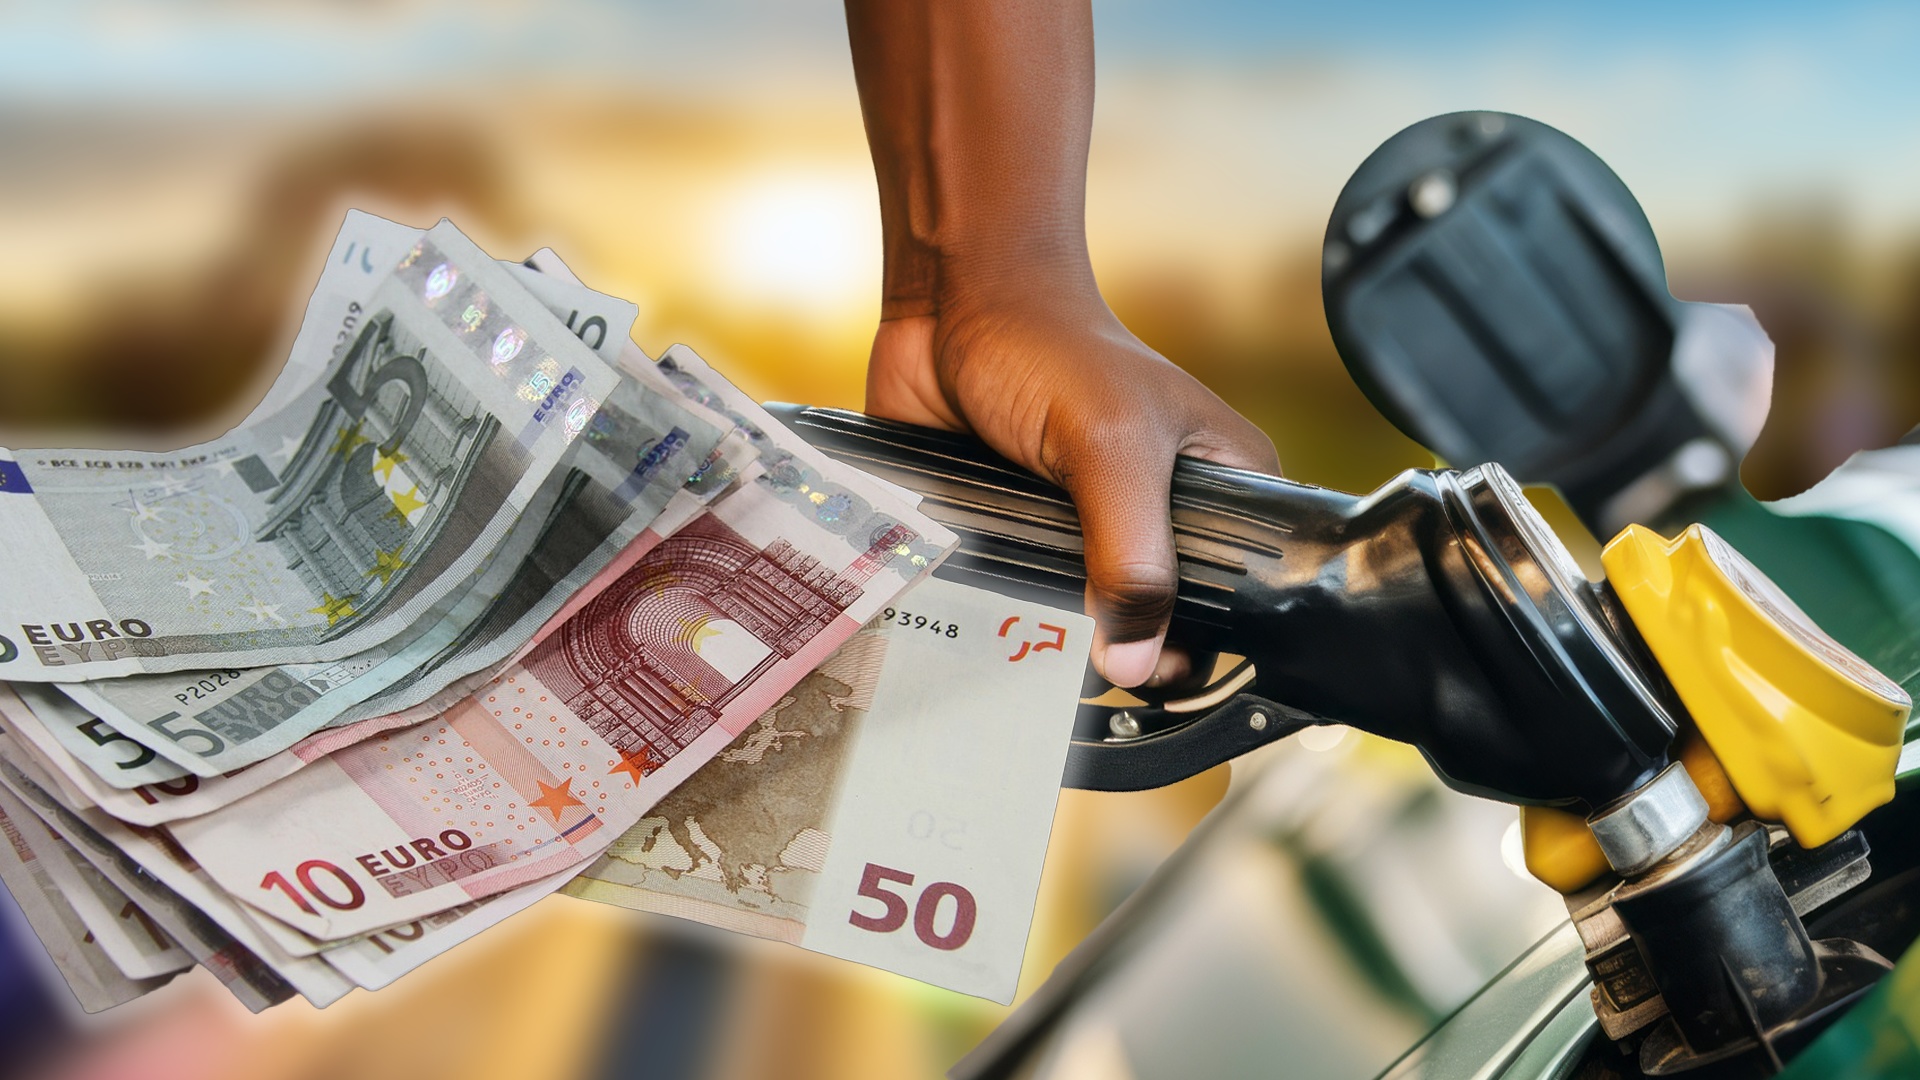 #Jedes Jahr 1.500 Euro für Benzin ausgeben? Mit dieser Tank-App könntet ihr ordentlich Geld sparen